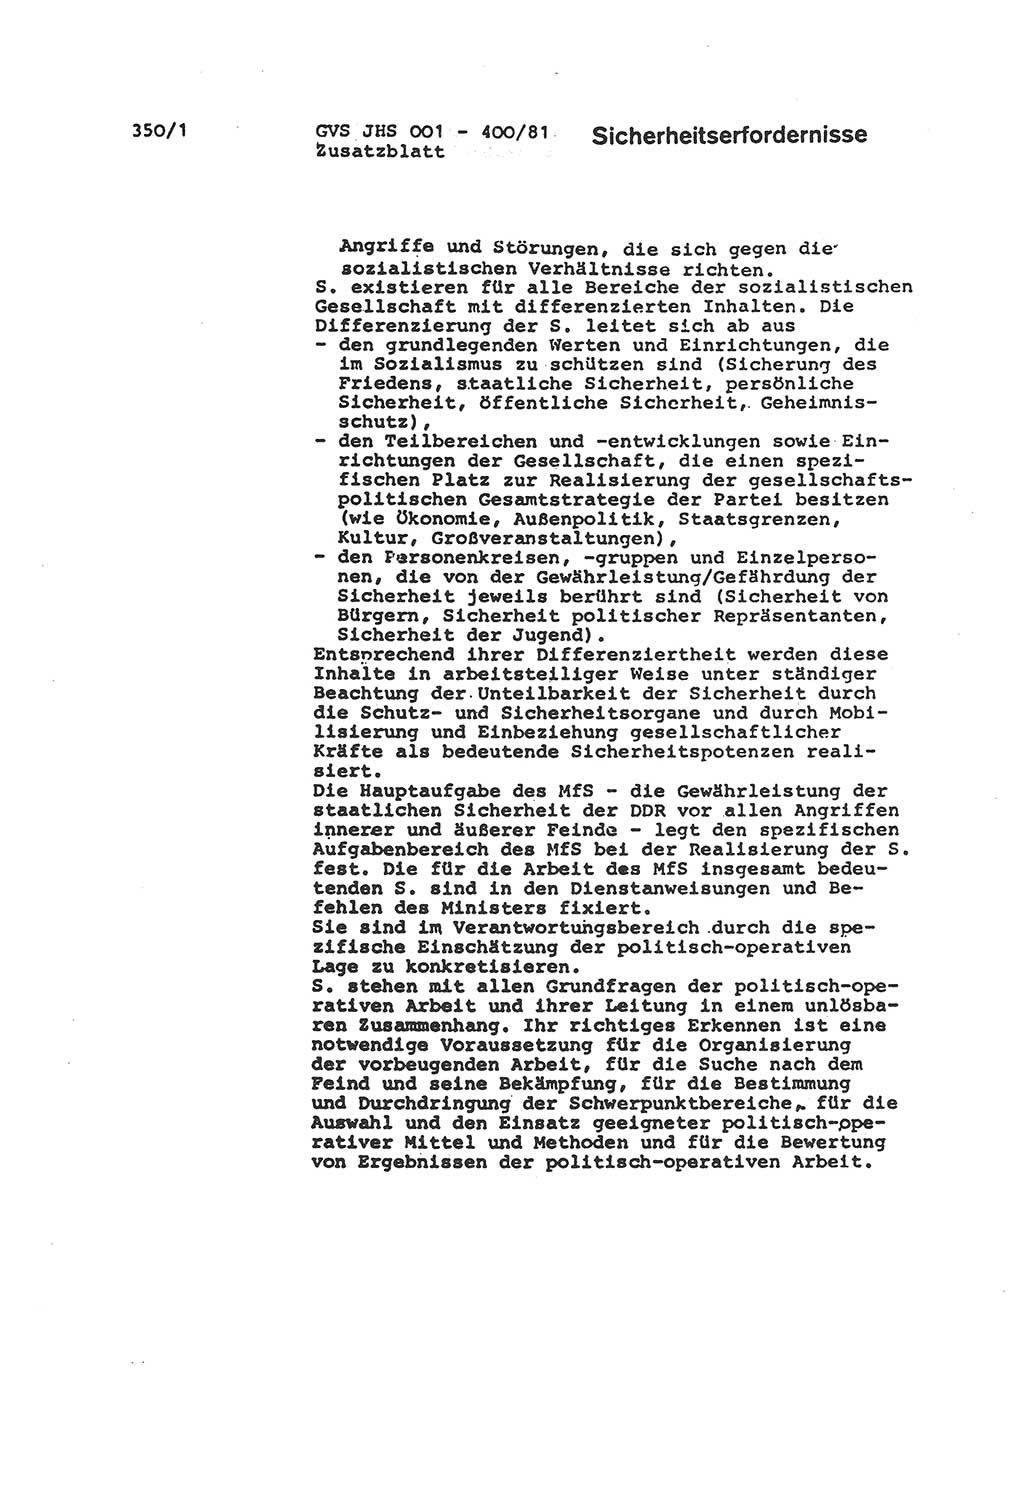 Wörterbuch der politisch-operativen Arbeit, Ministerium für Staatssicherheit (MfS) [Deutsche Demokratische Republik (DDR)], Juristische Hochschule (JHS), Geheime Verschlußsache (GVS) o001-400/81, Potsdam 1985, Blatt 350/1 (Wb. pol.-op. Arb. MfS DDR JHS GVS o001-400/81 1985, Bl. 350/1)